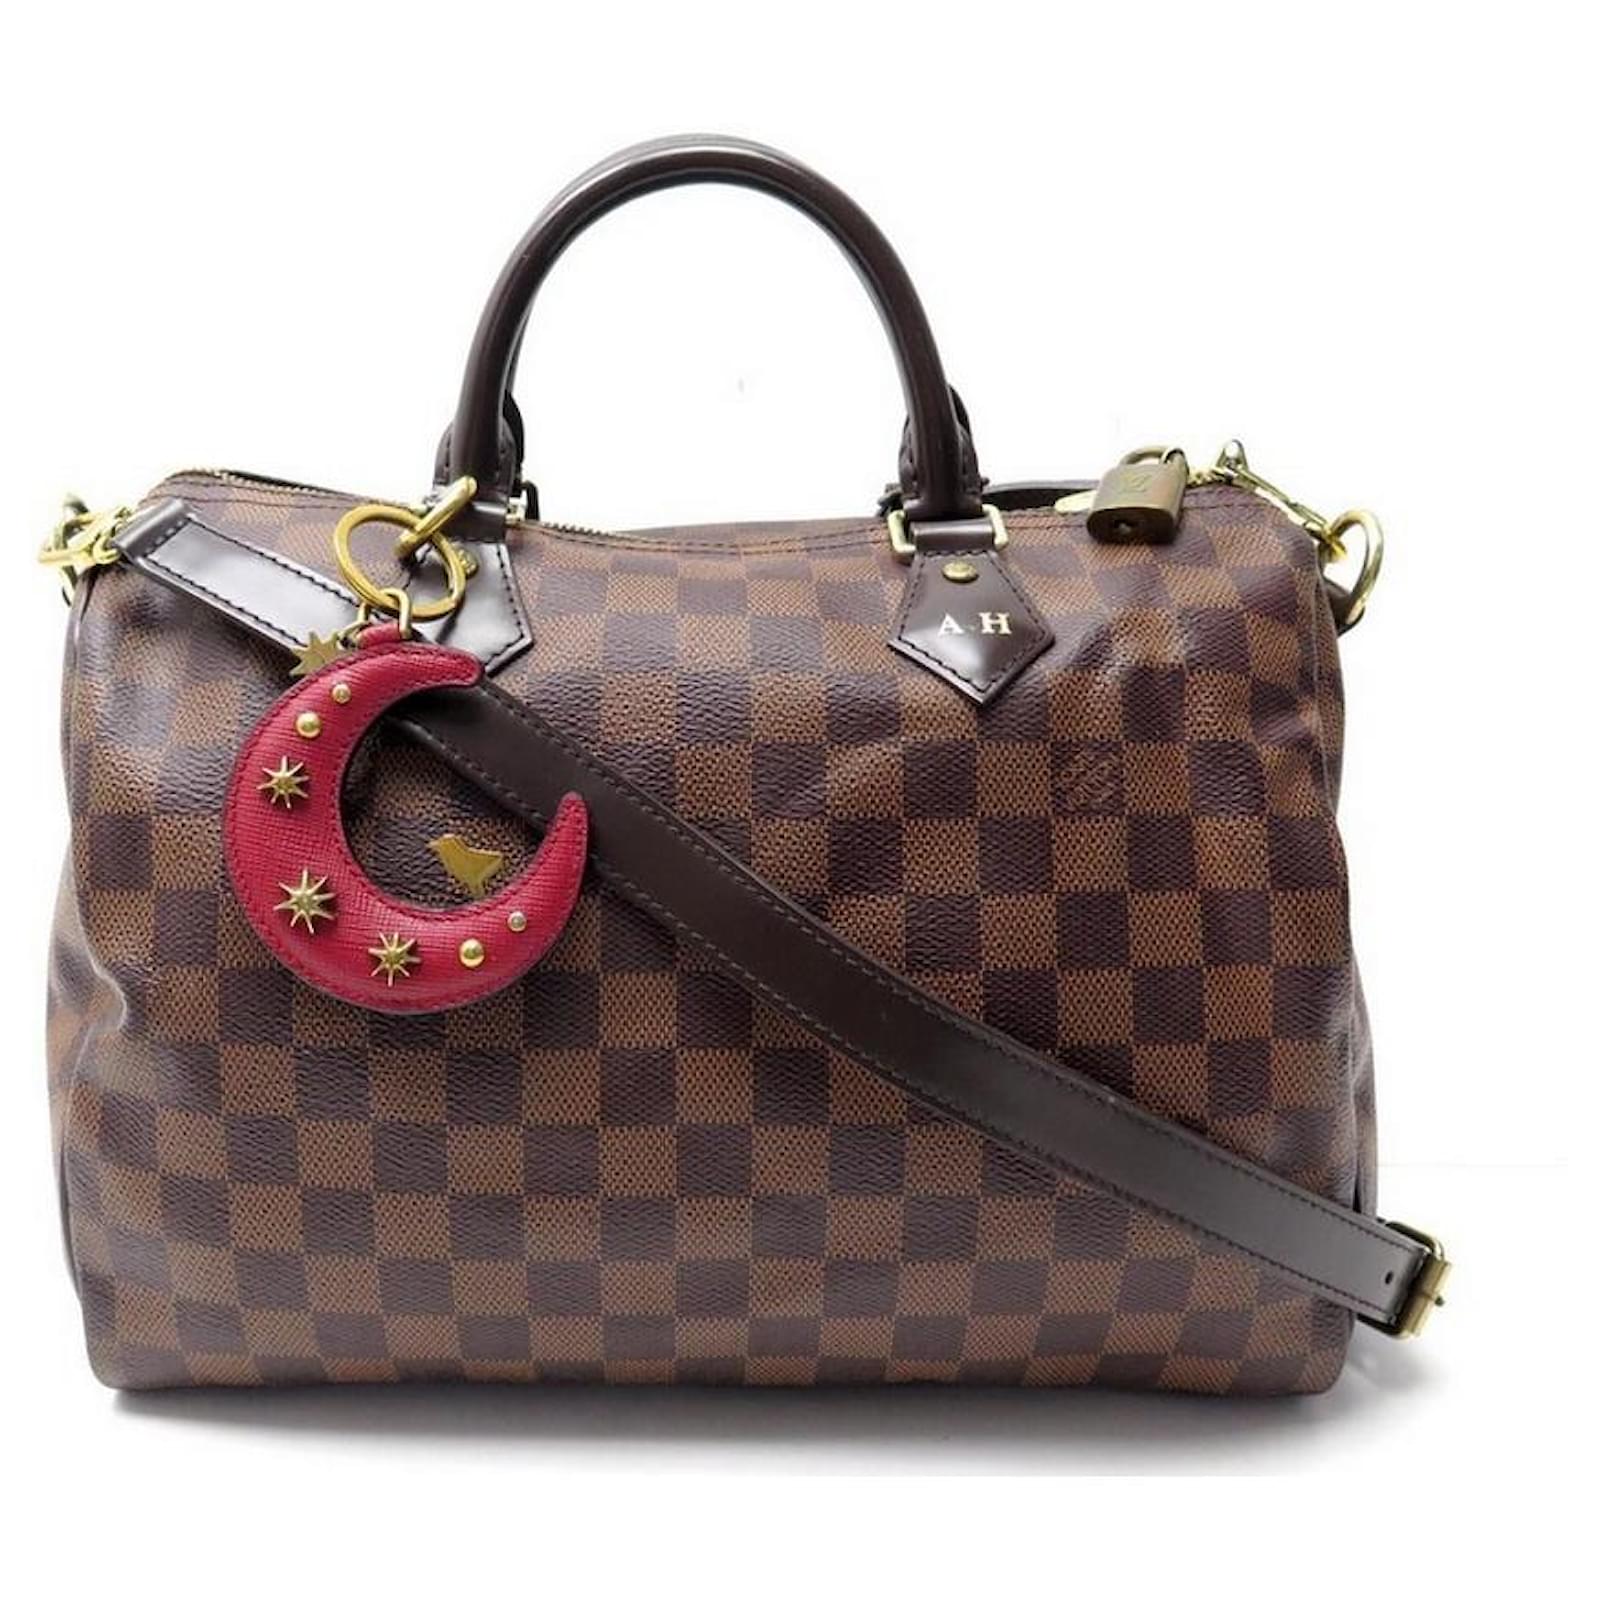 Louis Vuitton Speedy Handbag 30 EBONY DAMIER CANVAS BANDOULIERE